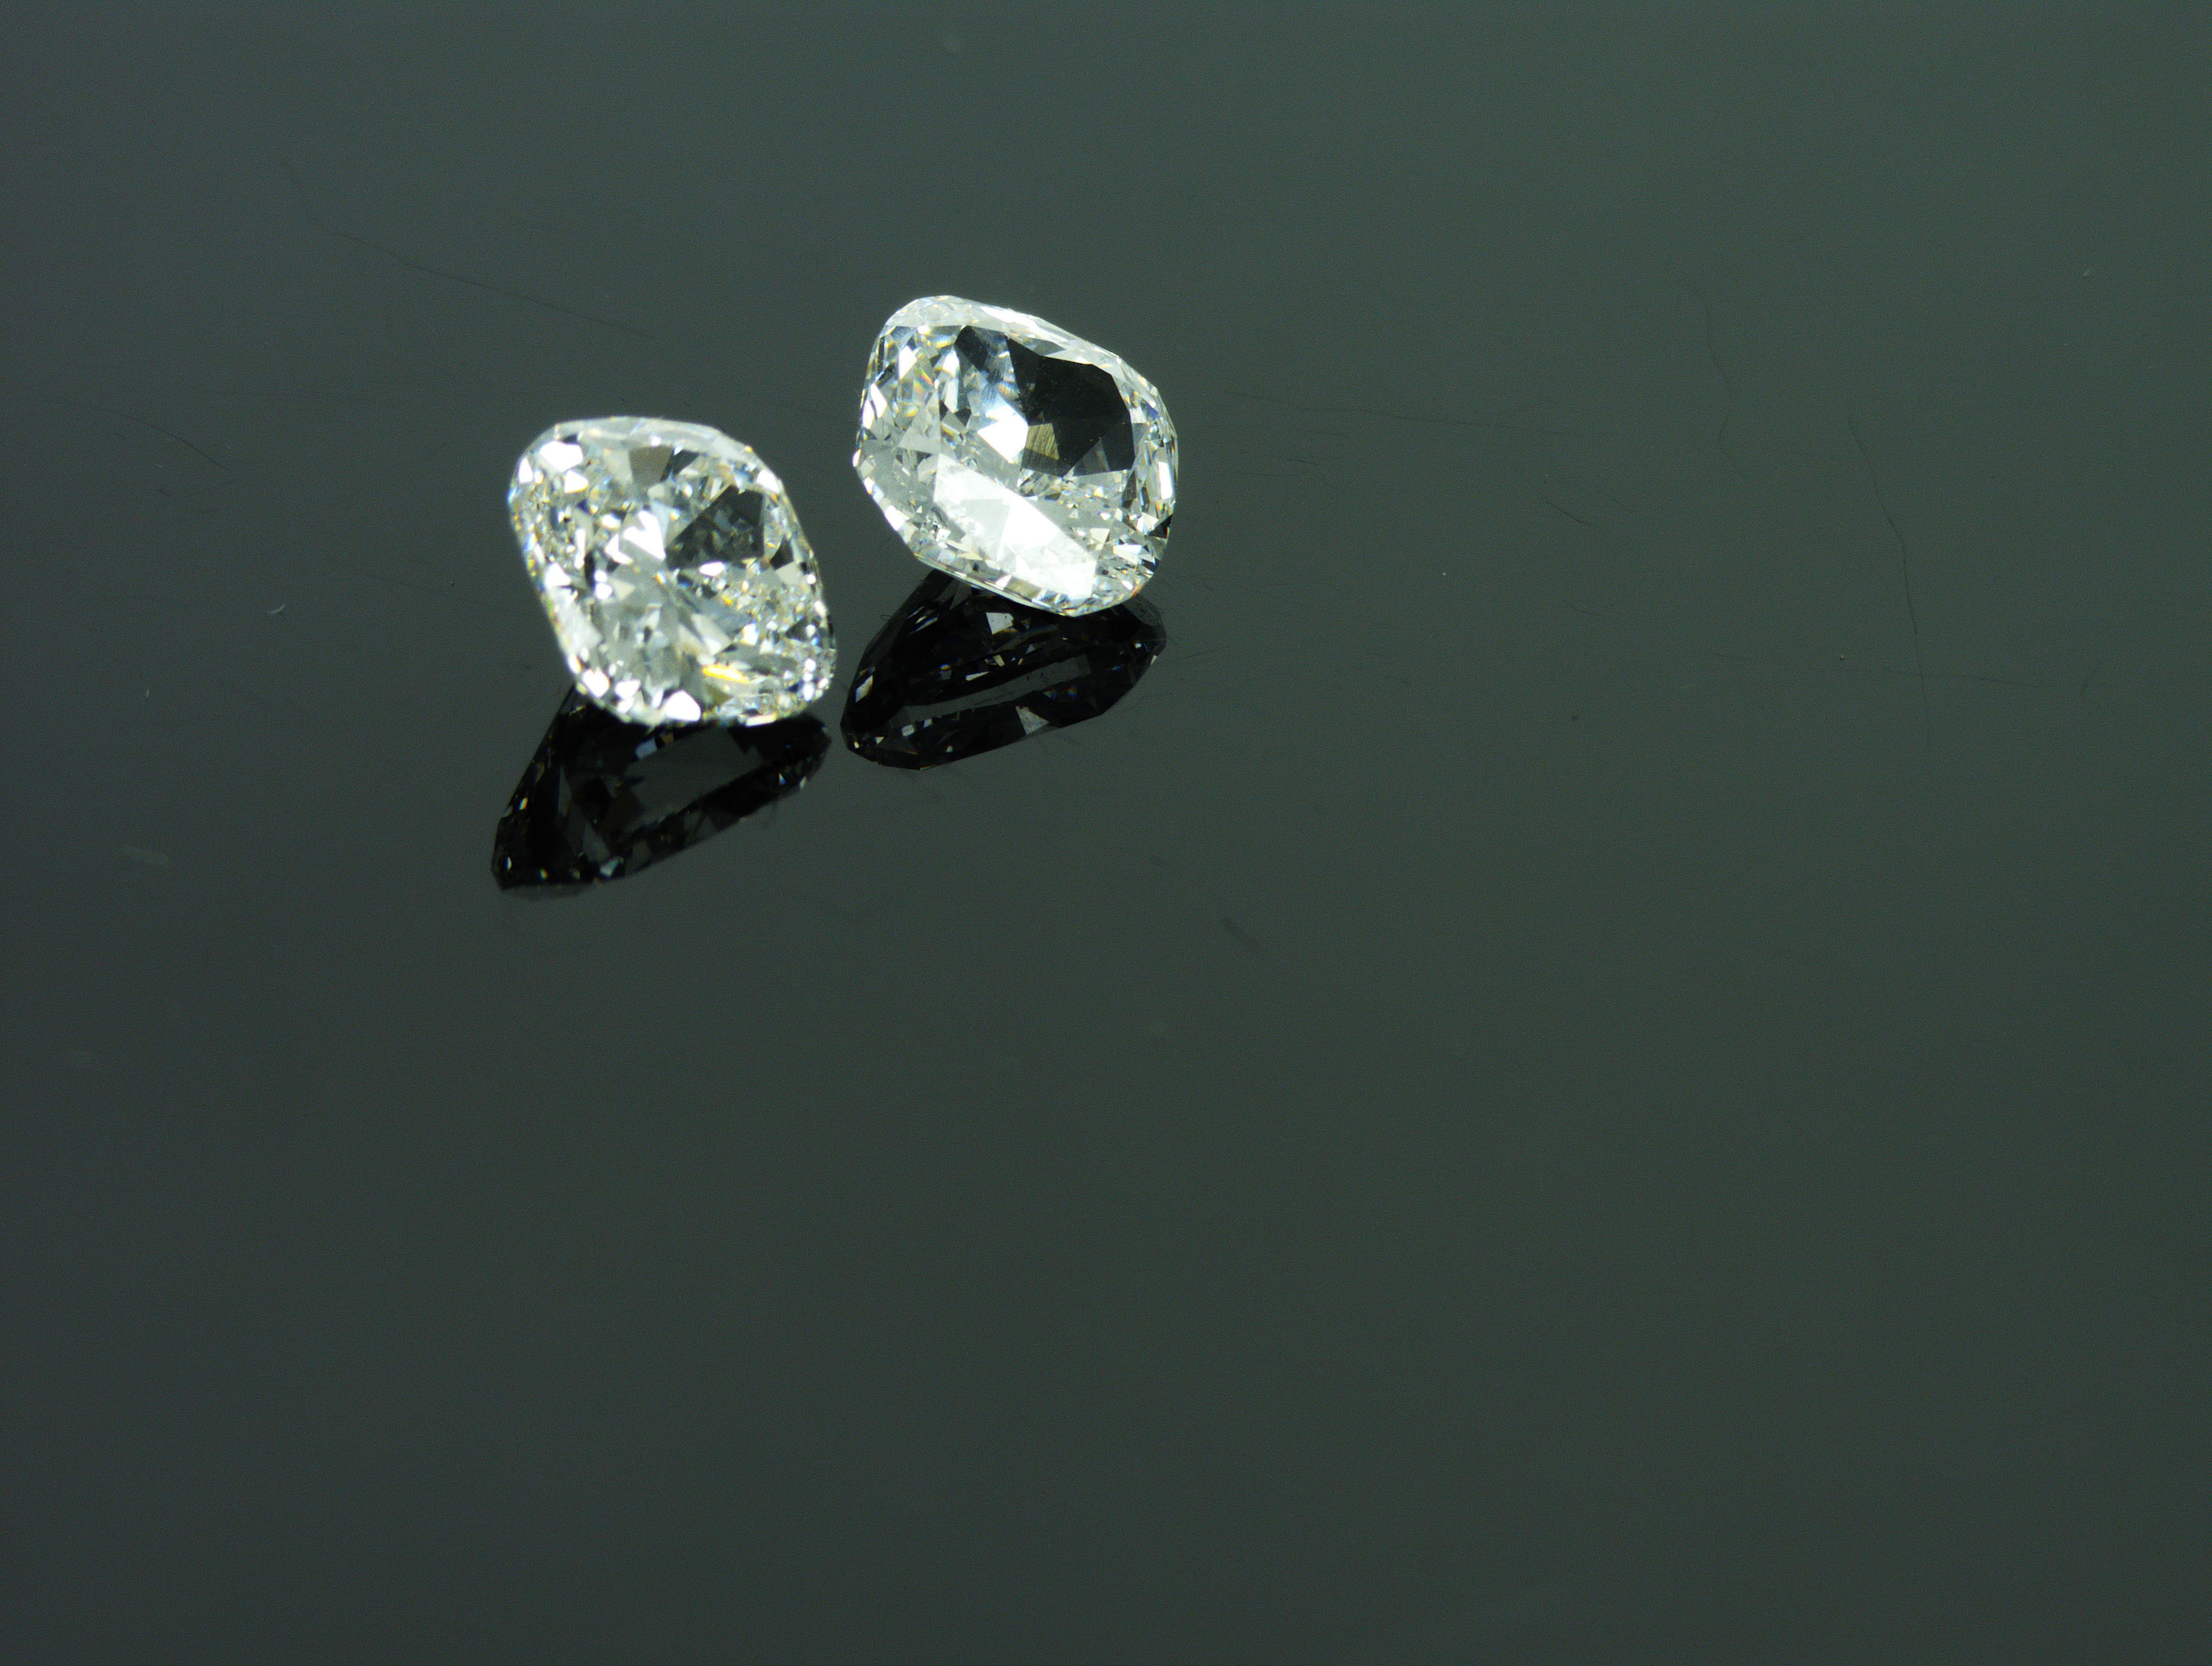 Nous sommes une société de production de diamants naturels située à Dubaï. Paire idéalement assortie de 2 diamants naturels de forme coussin
Diamant naturel de forme coussin 1 :
Poids : 1,01 ct
Forme : Coussin
Couleur : blanc rare + (F)
Clarté :